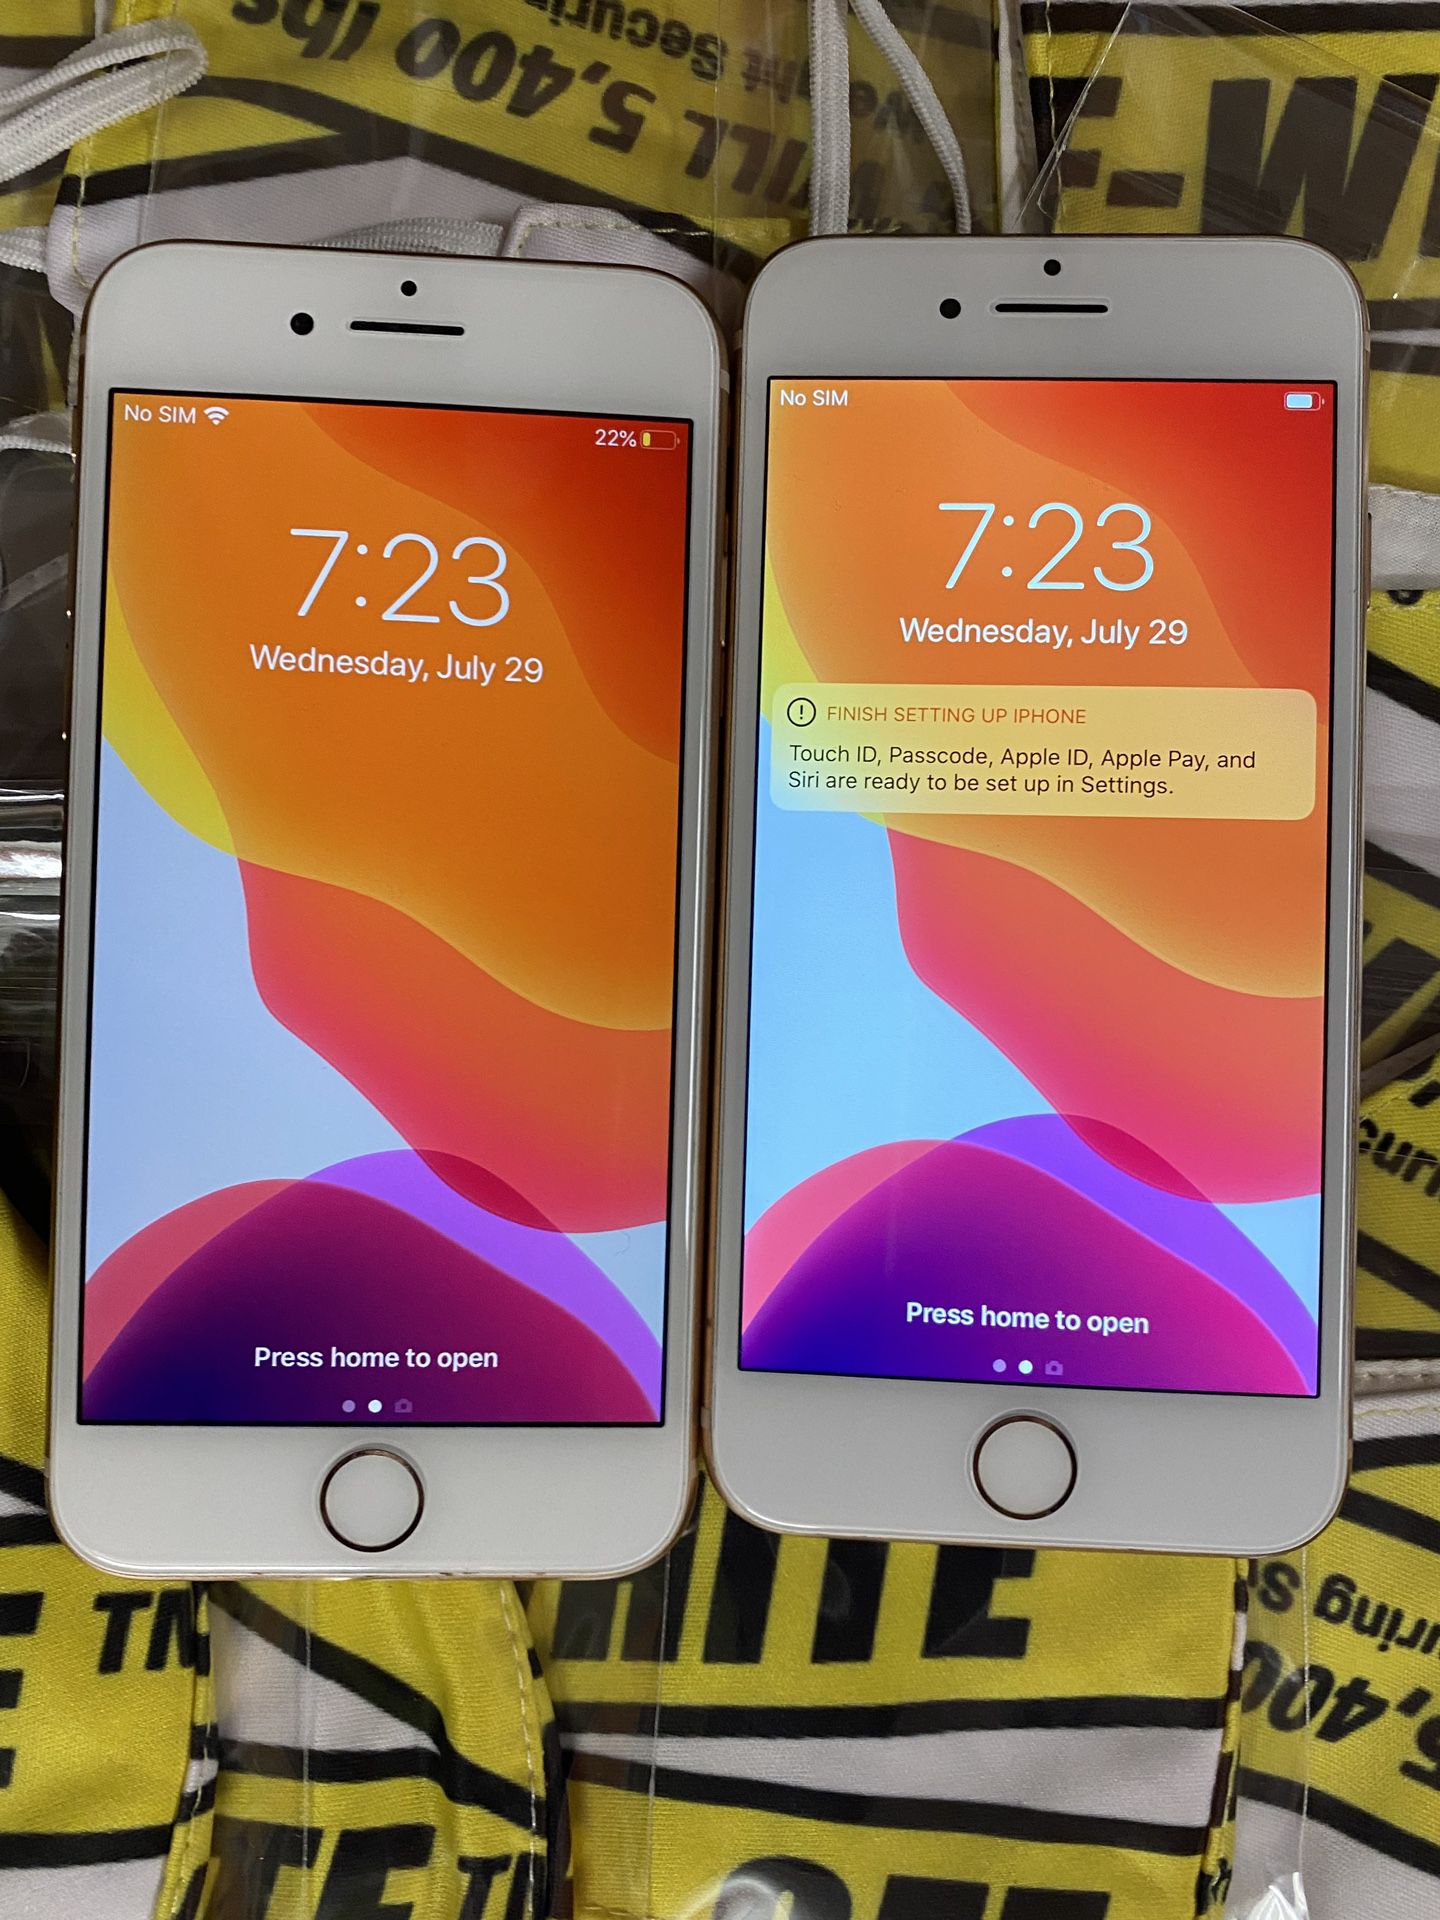 Factory unlocked apple iphone 8 64 gb, store warranty 